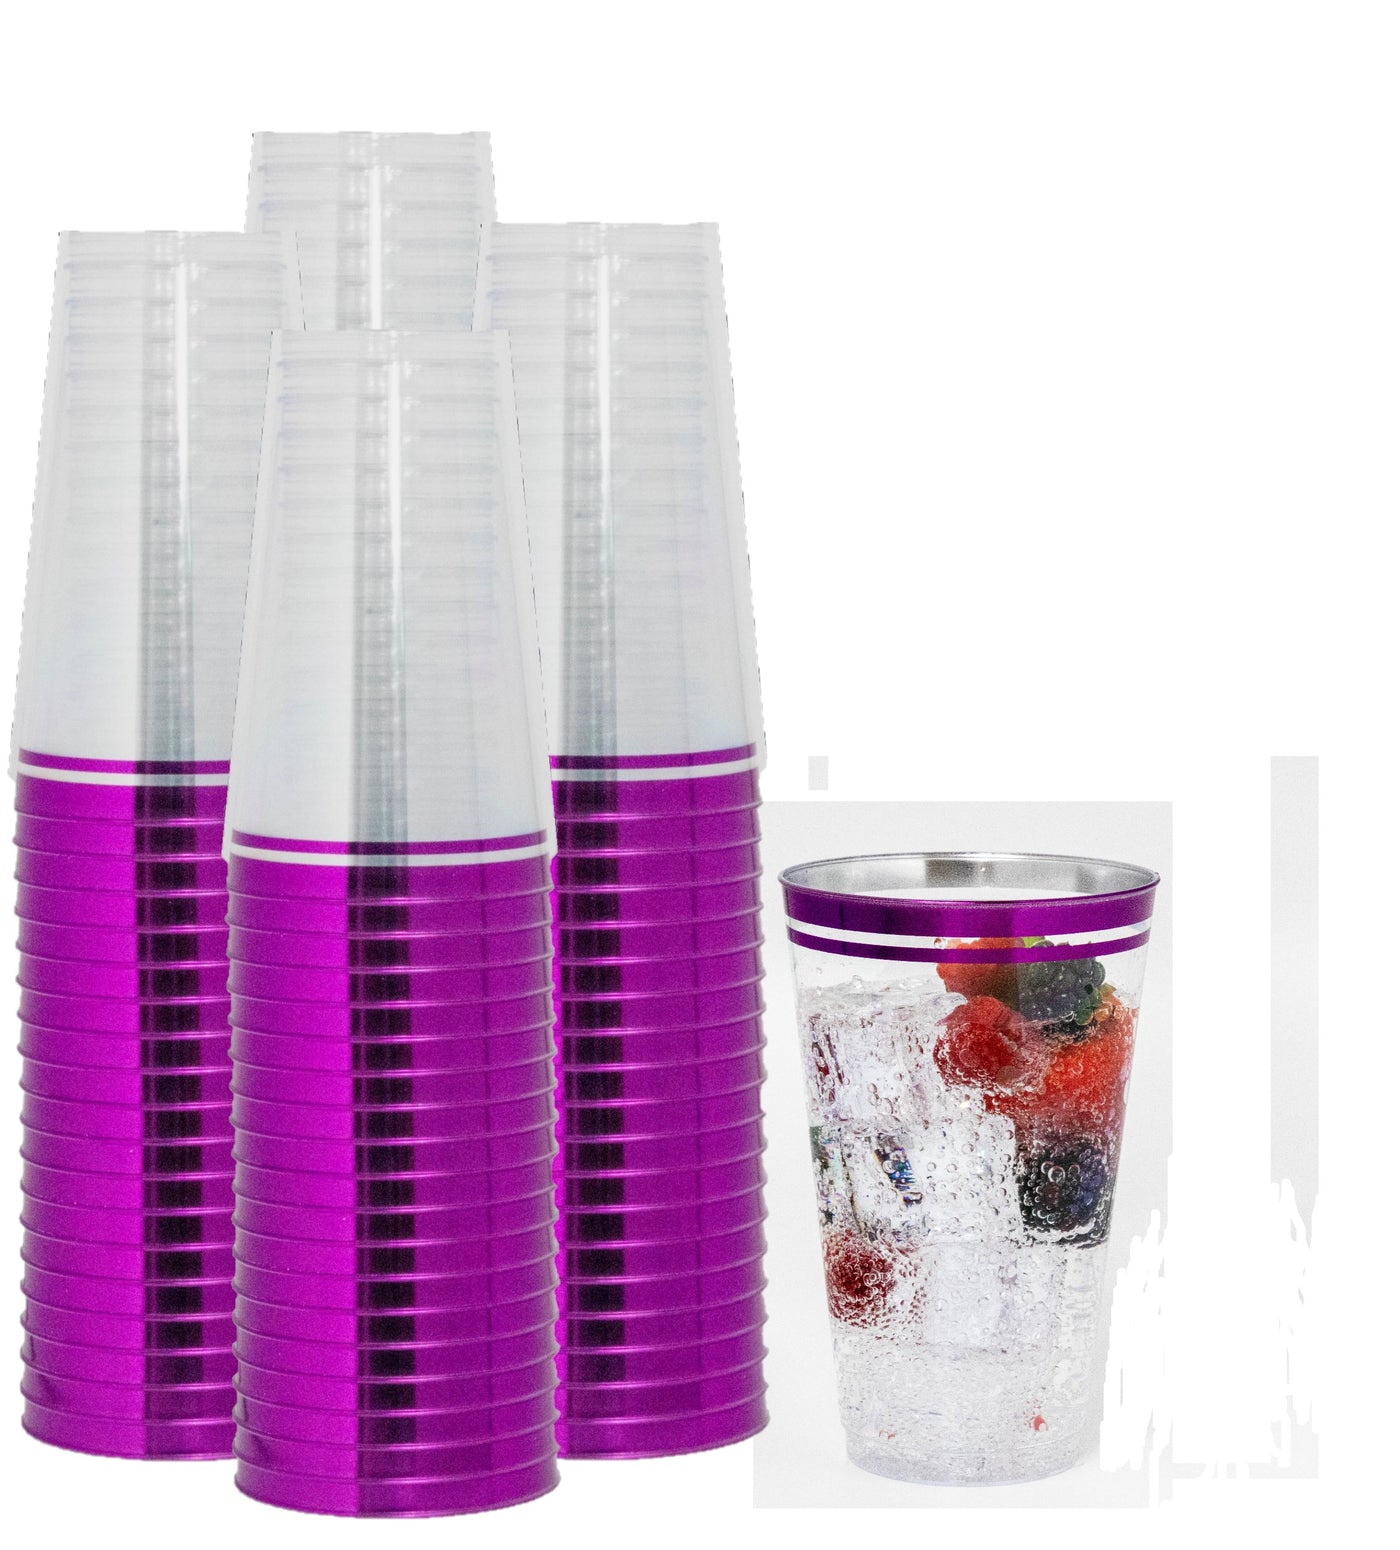 100 Pk 16 oz Clear Plastic Cups, Aqua Blue Rimmed Disposable Cups